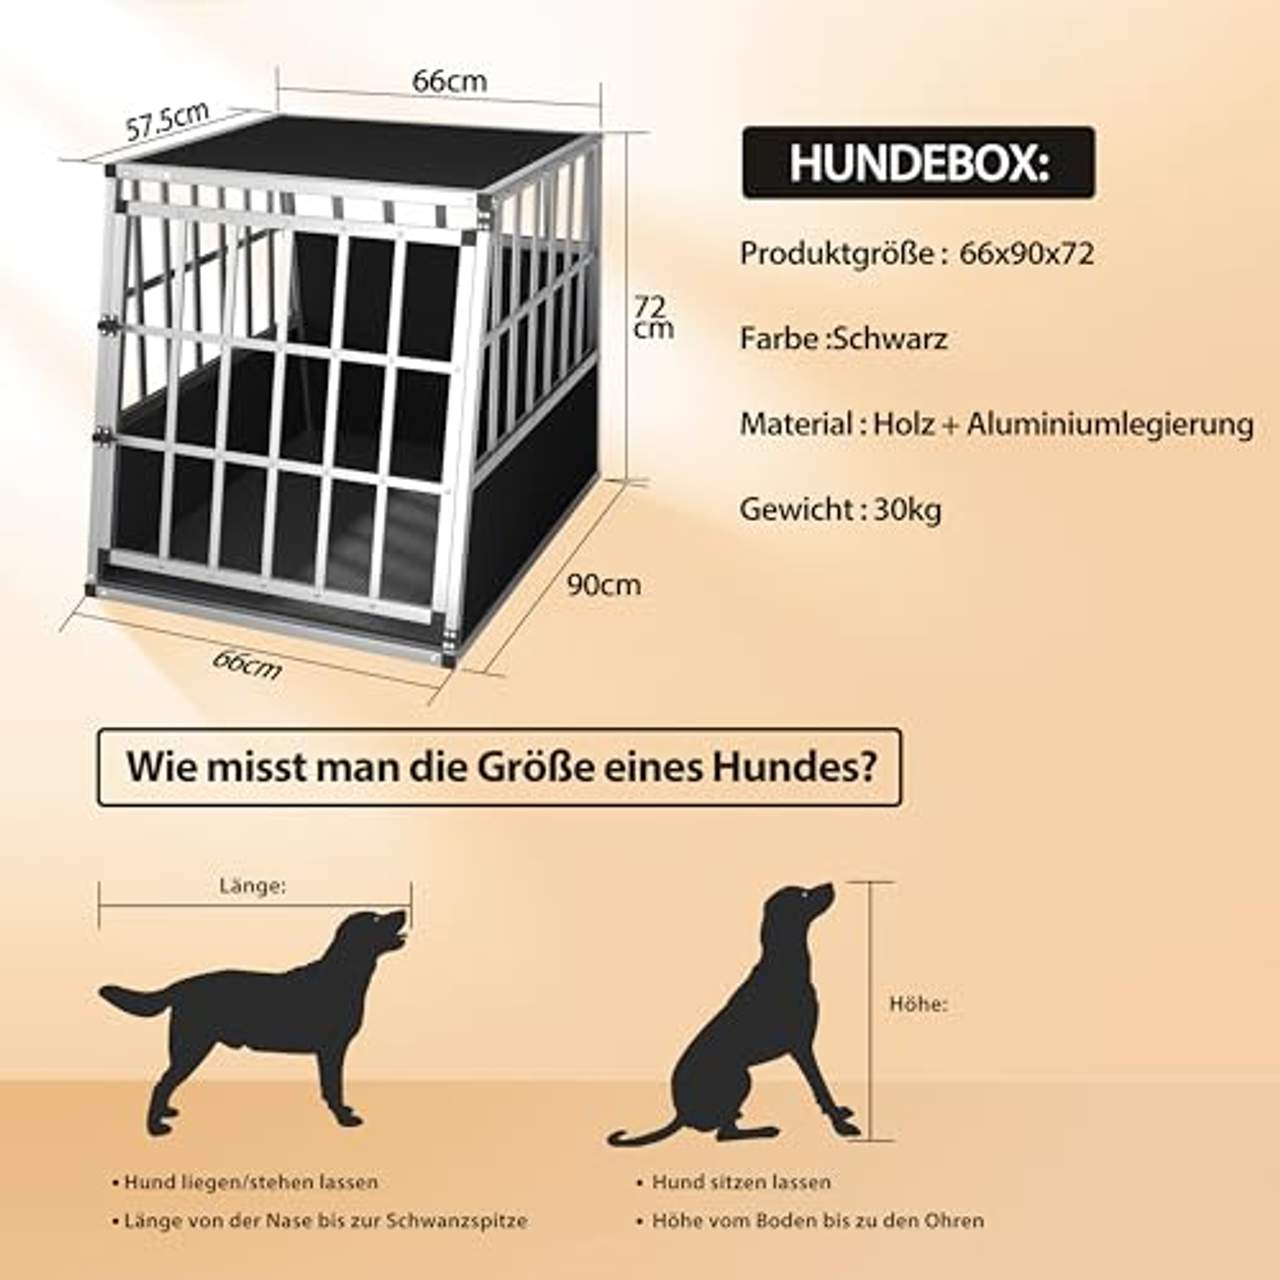 Cadoca Hundetransportbox L robust verschließbar aus Aluminium Autotransportbox